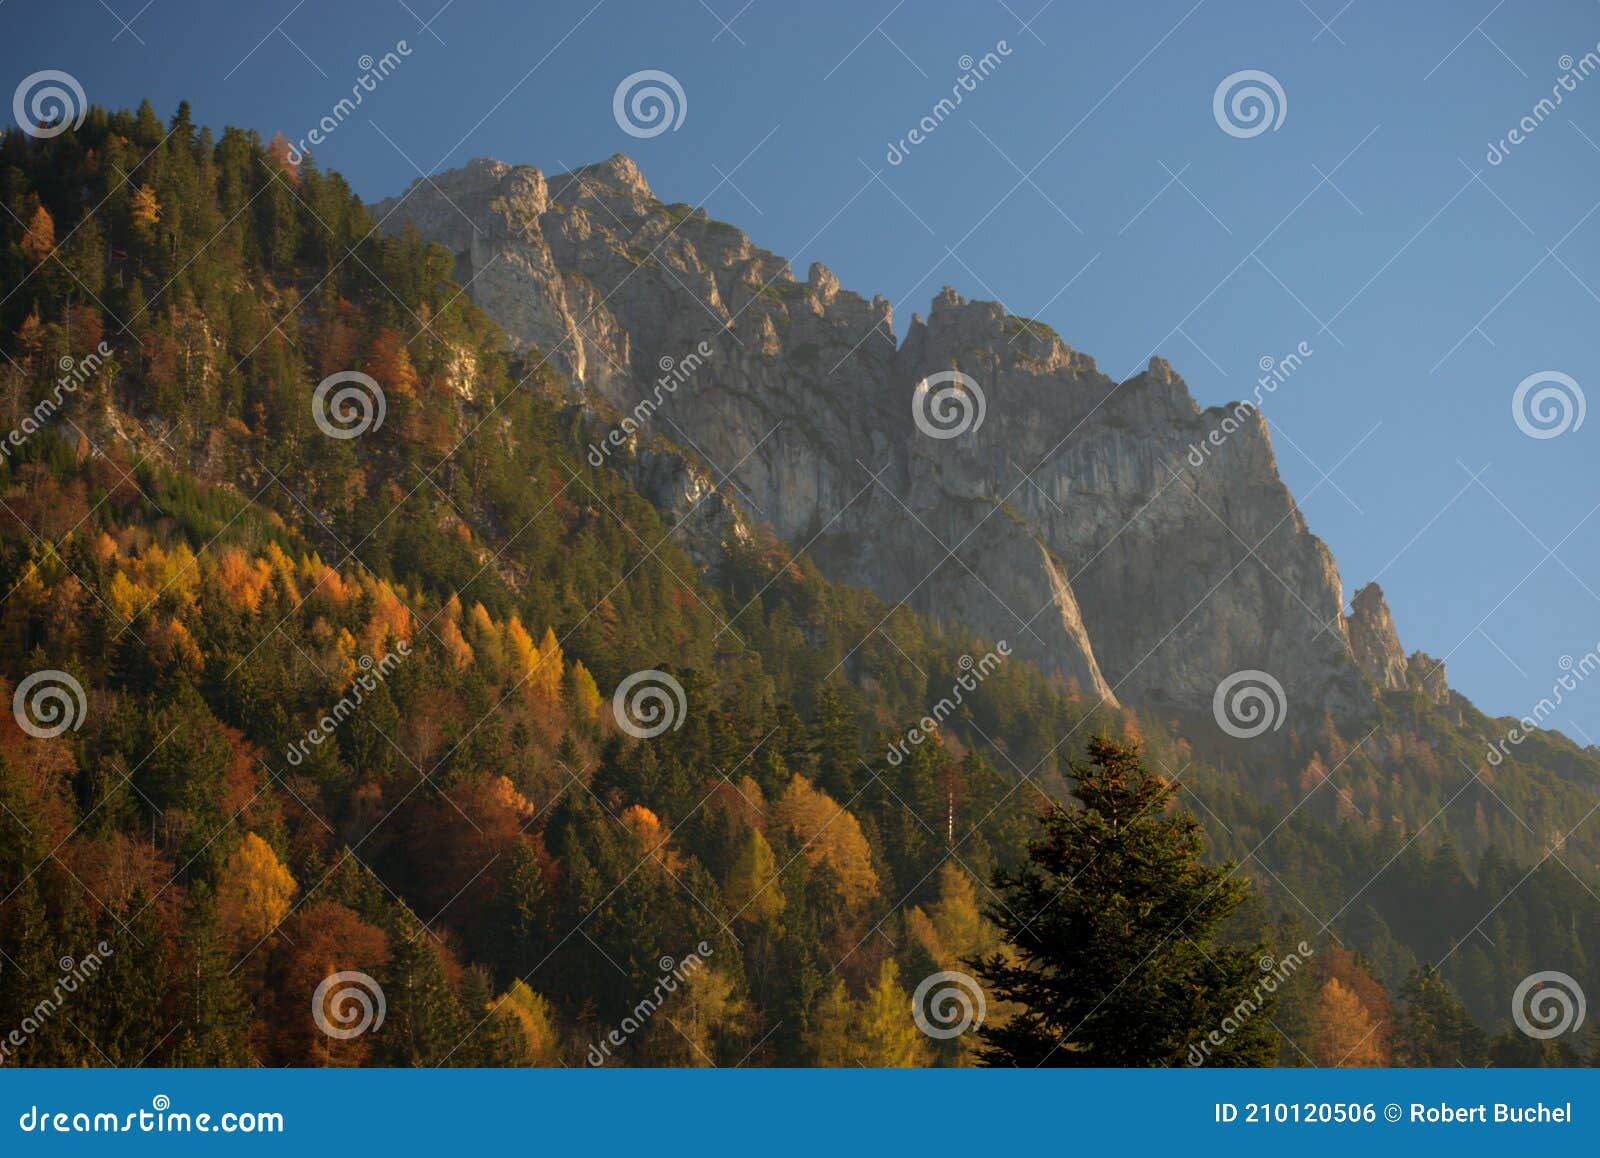 colorful autumn mood in planken in liechtenstein 11.11.2020